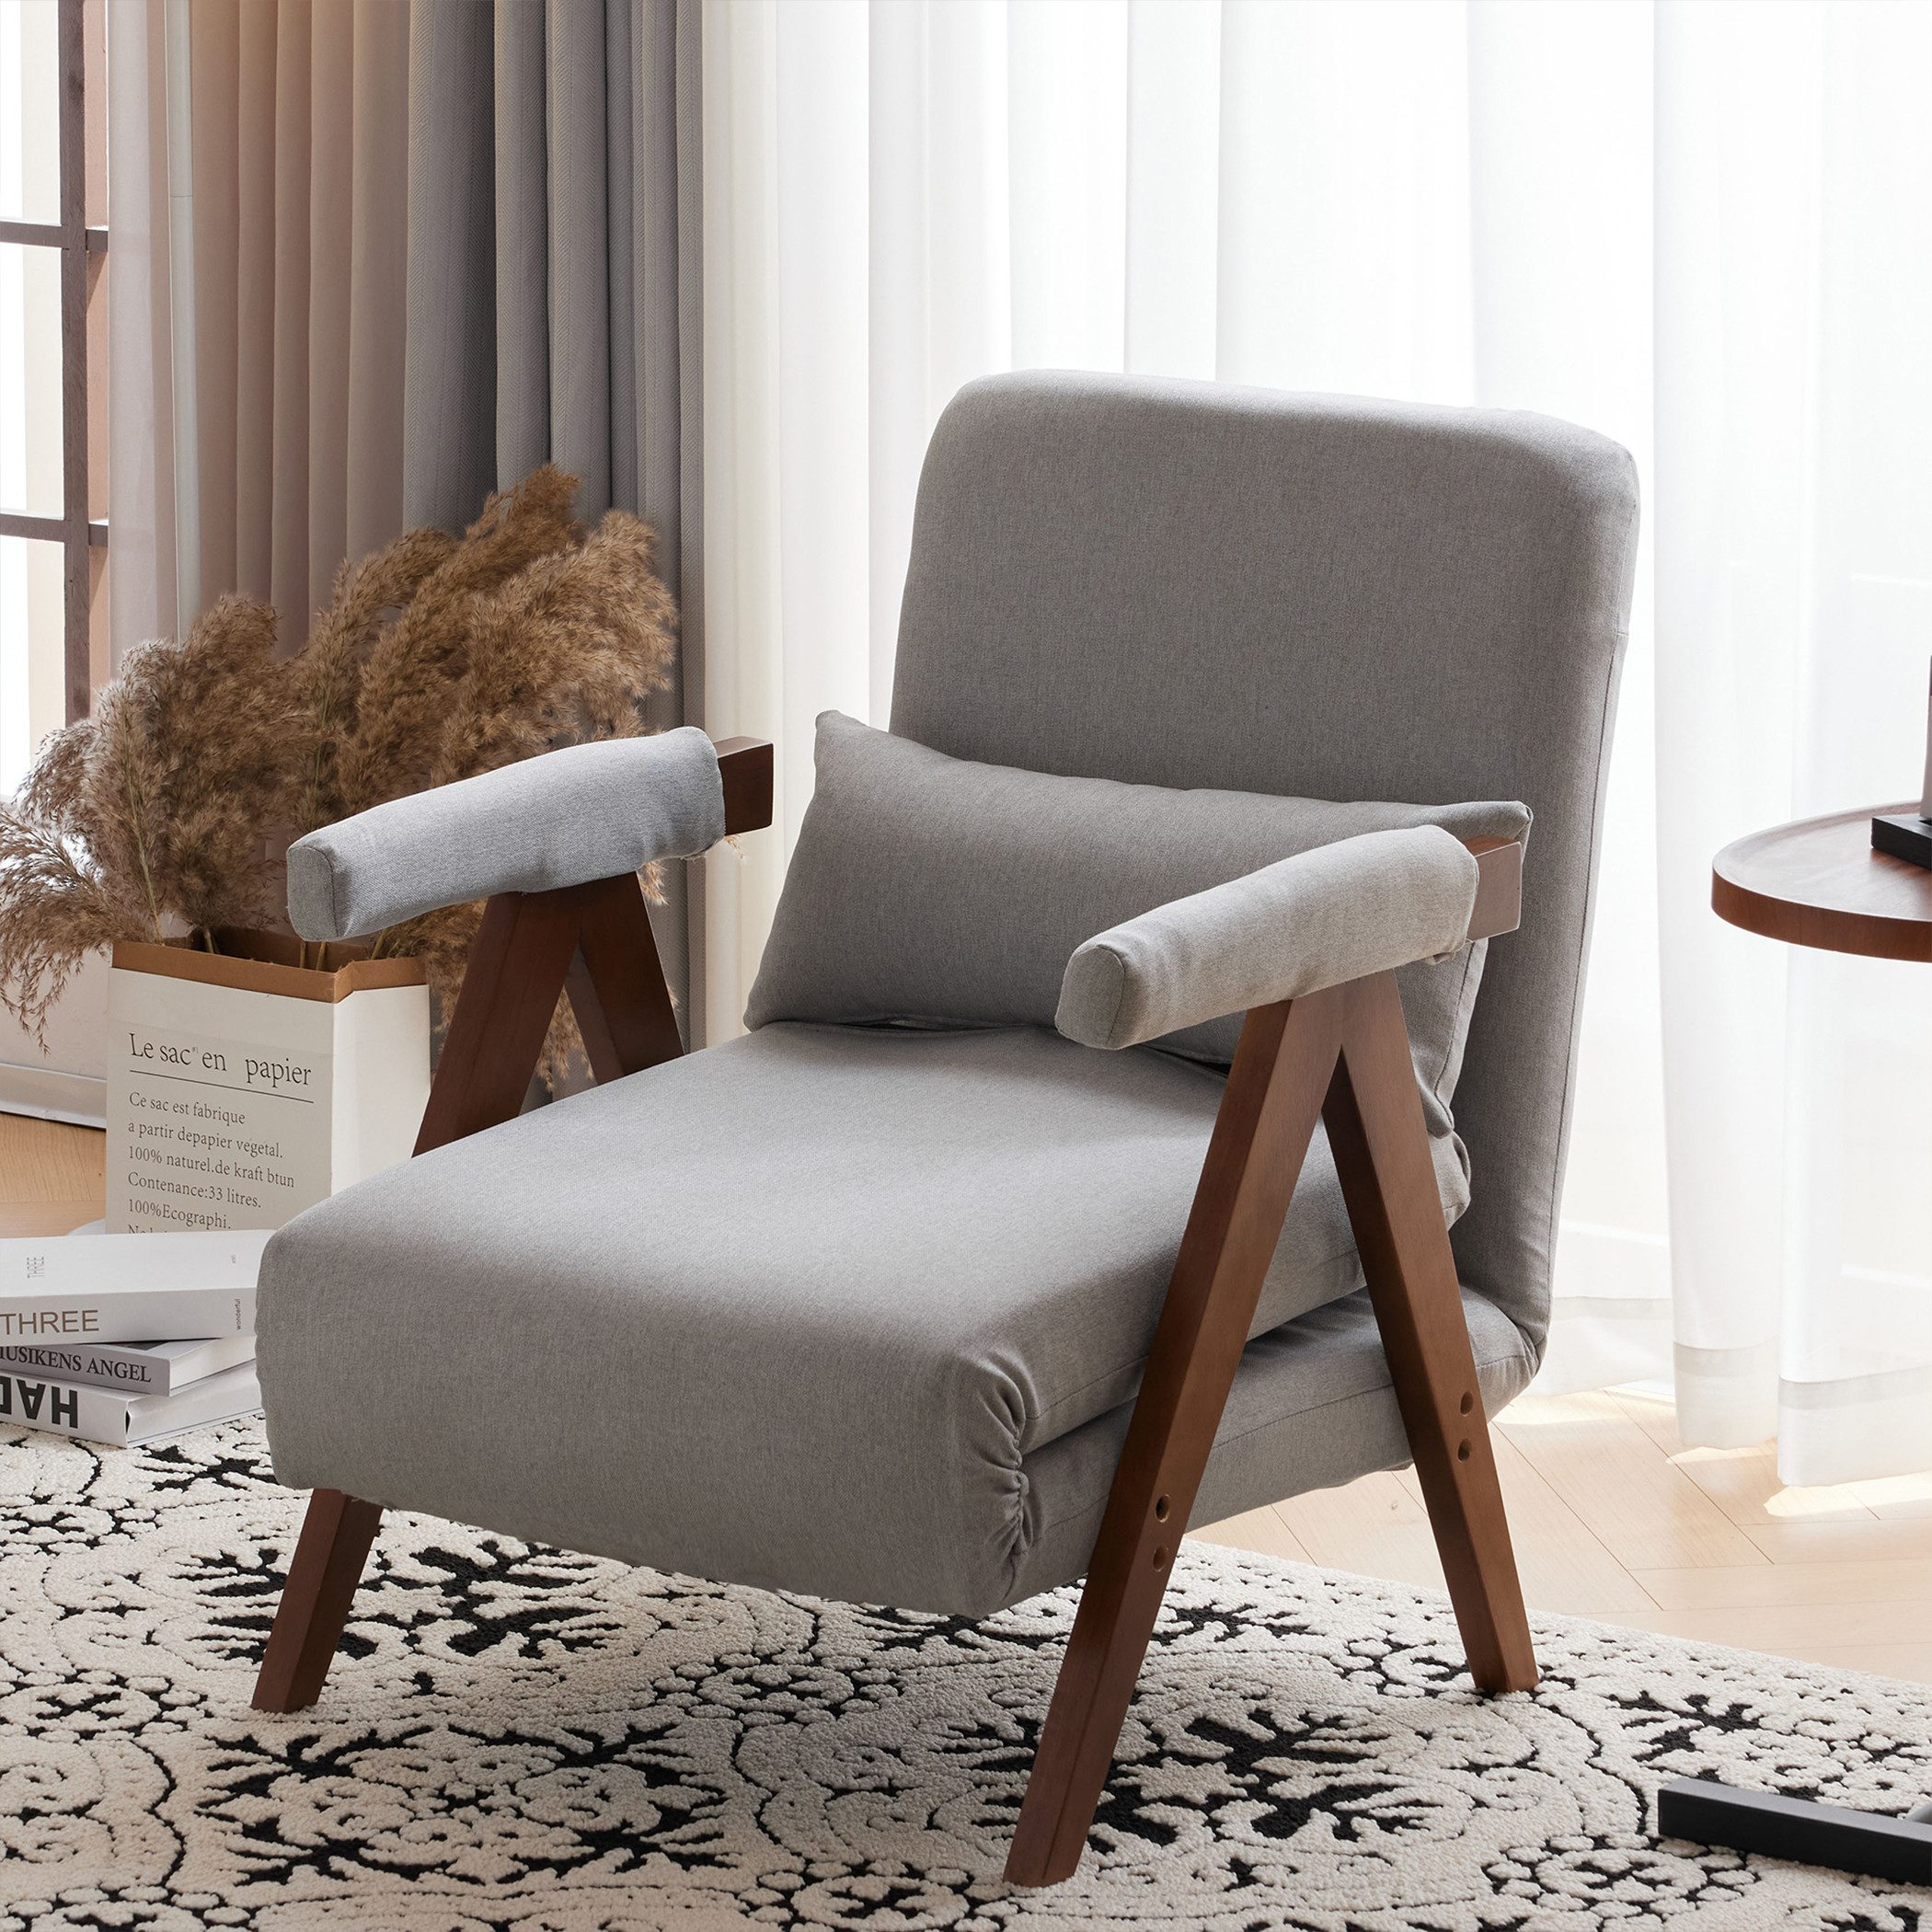 KLAM HOME Loungesessel 3 in1 verstellbare Rückenlehne 6 Positionen, umwandelbares Schlafsofa, multifunktionaler Relaxsessel geeignet für Zuhause und Büro